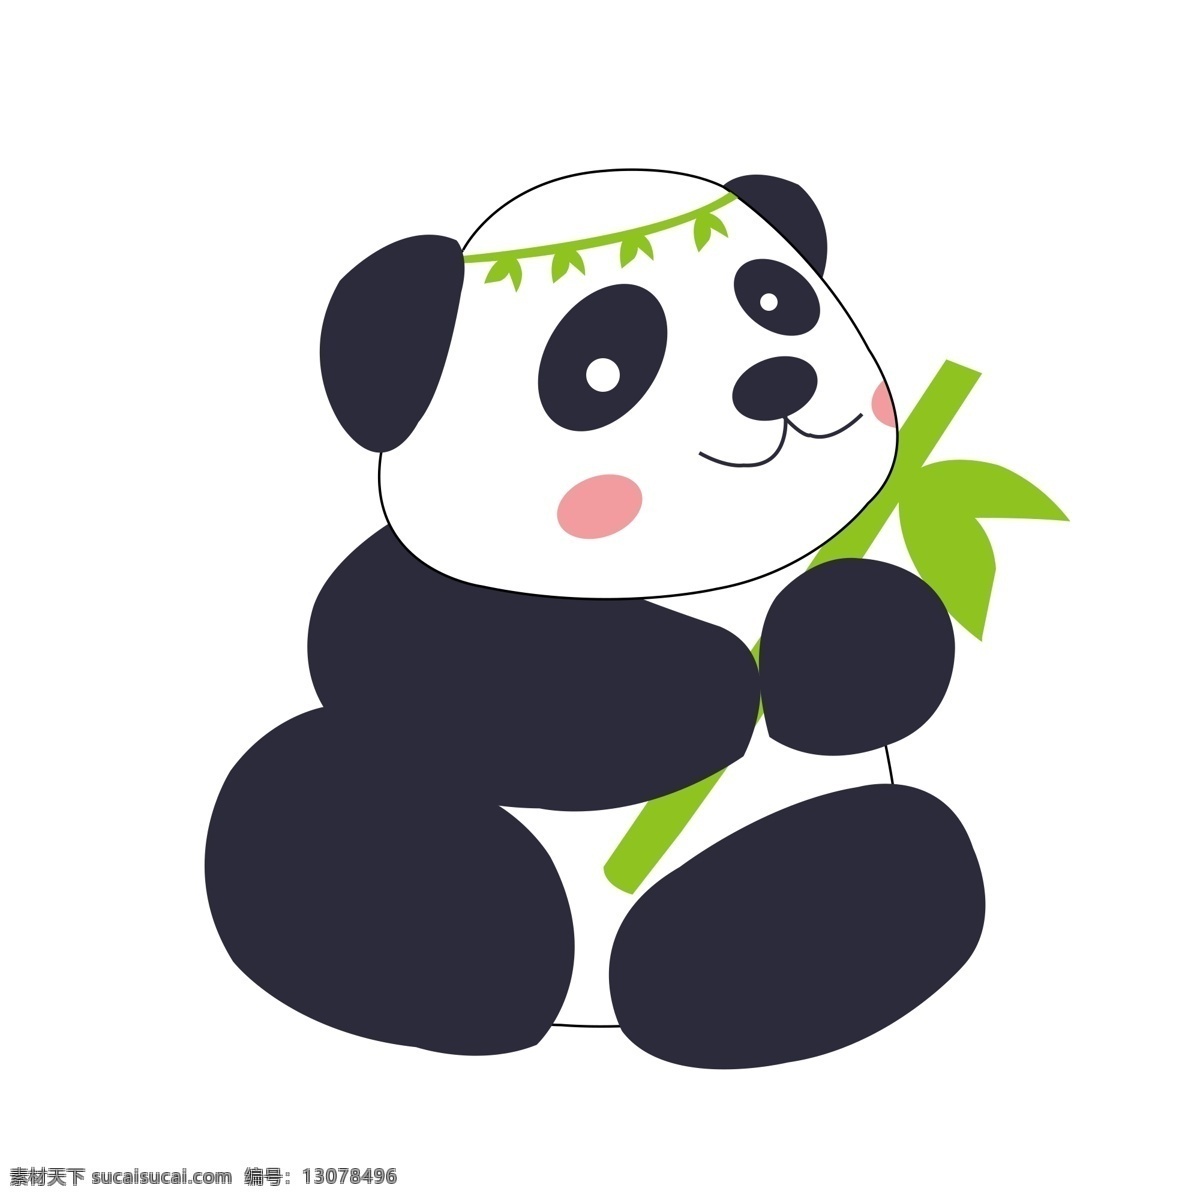 原创 熊猫 卡通 形象 卡通熊猫 国宝熊猫 熊猫矢量元素 熊猫素材 吃竹子的熊猫 插画熊猫元素